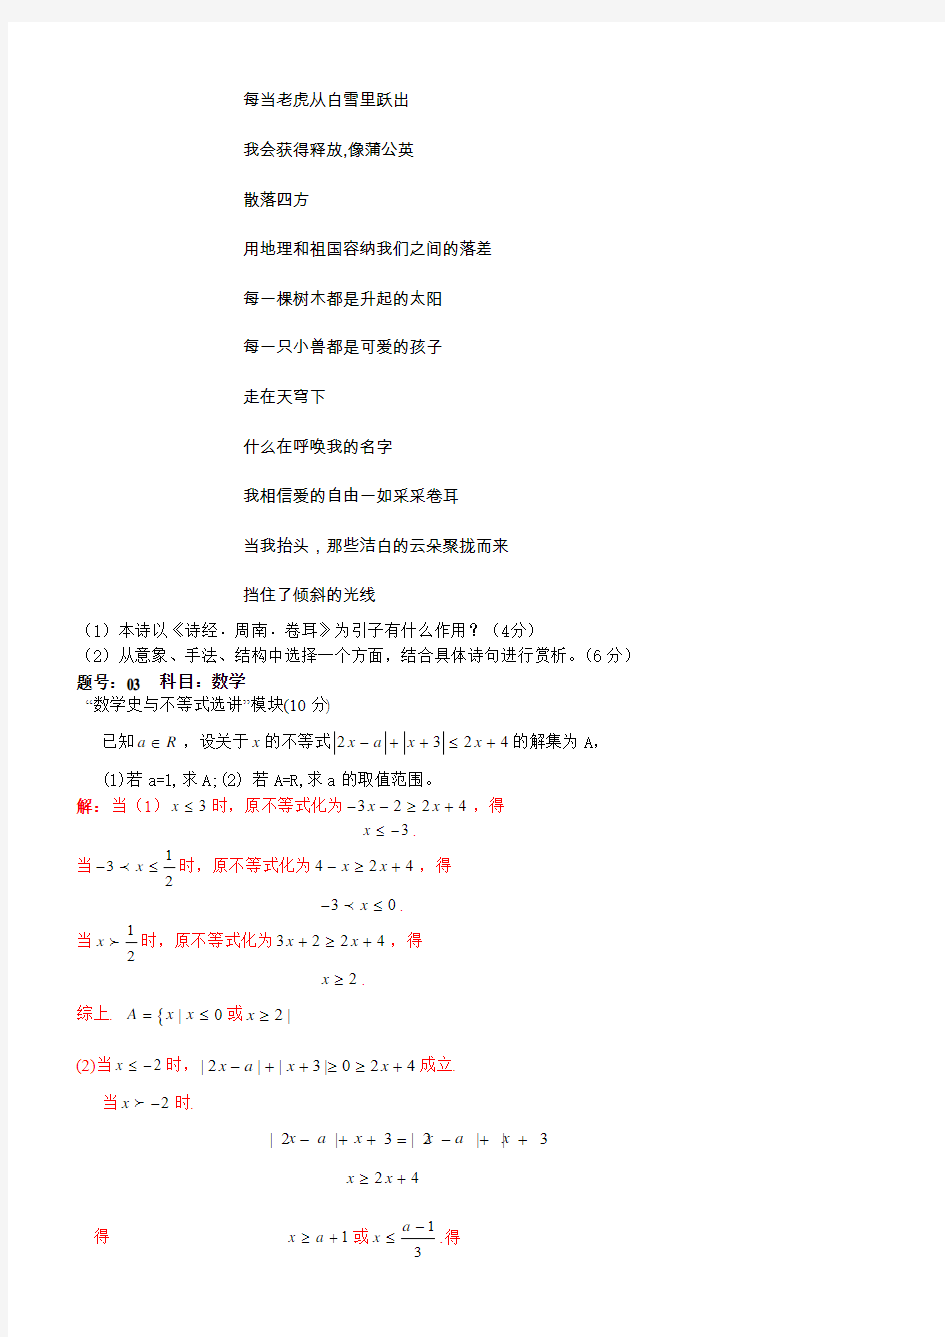 2012年高考真题——自选模块(浙江卷)word版